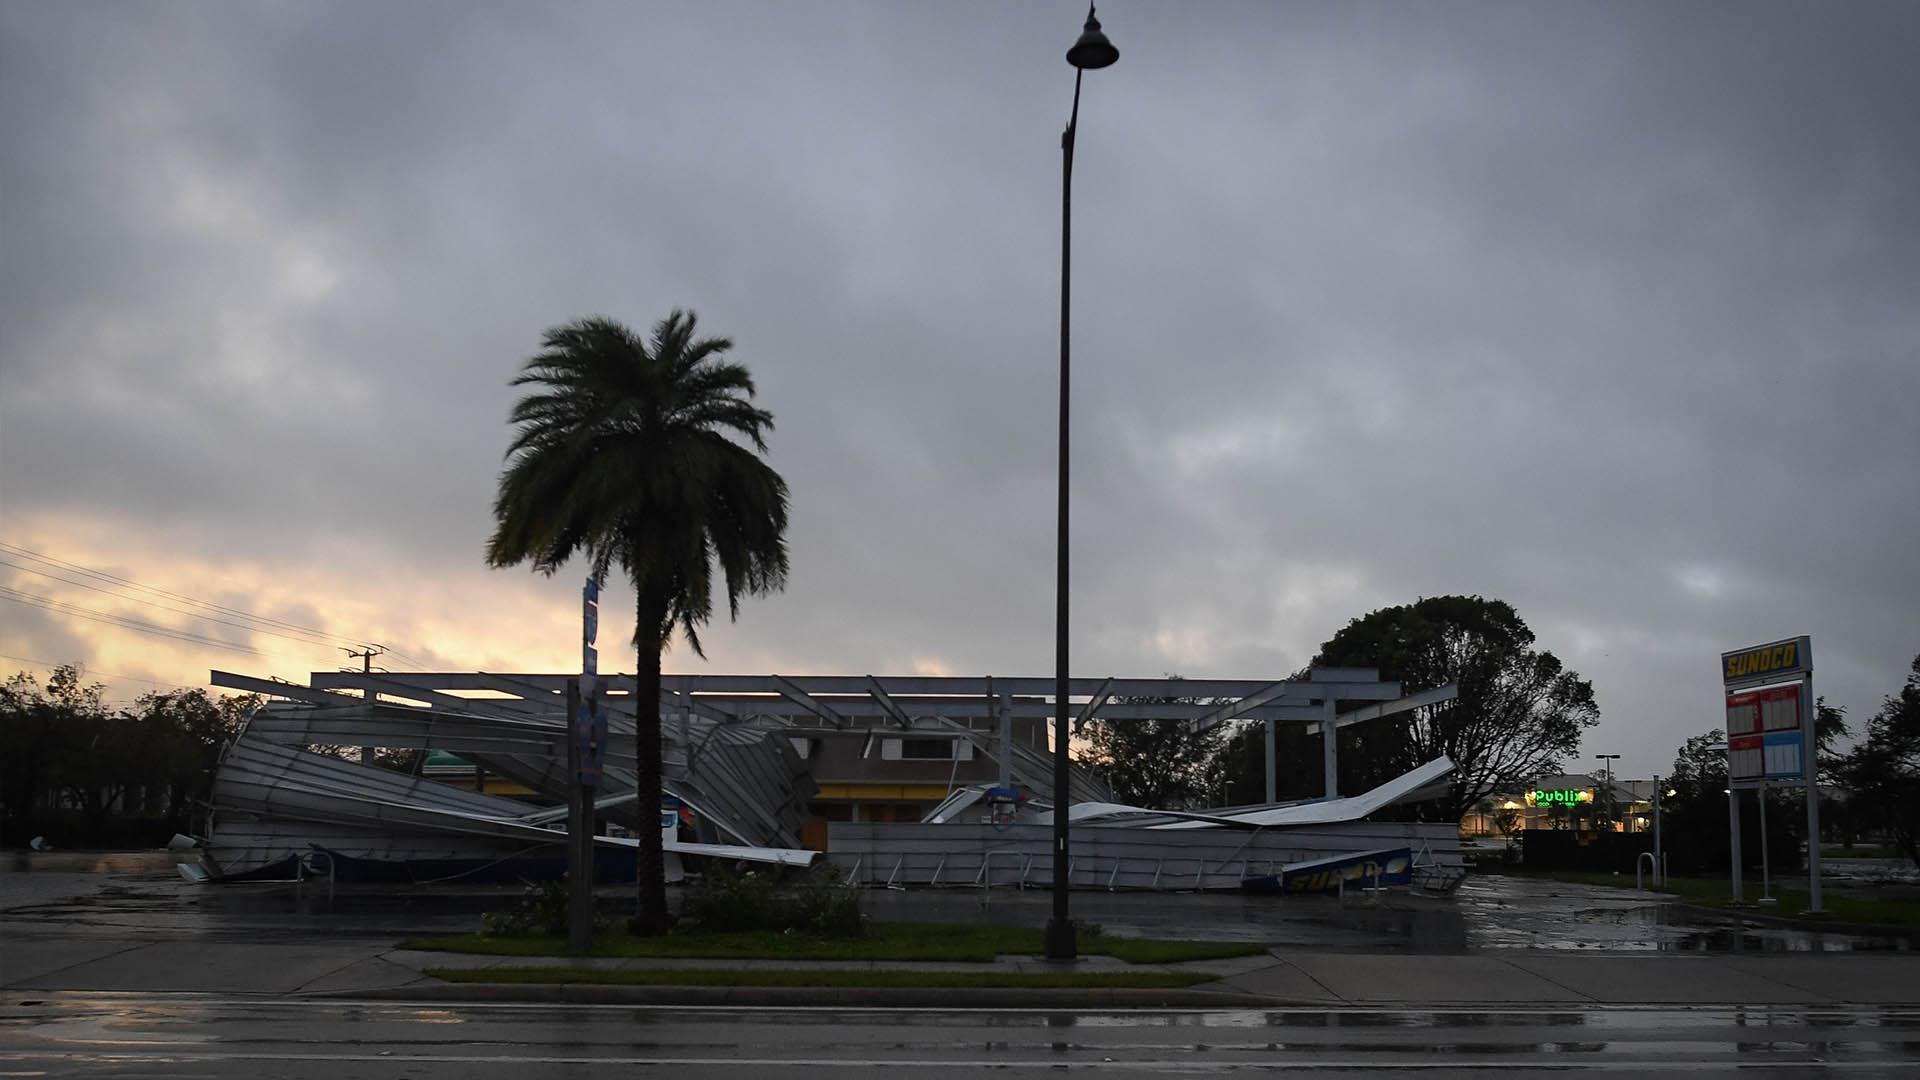 Irma agota las categorías: ¿es el primero de los grandes huracanes por venir?